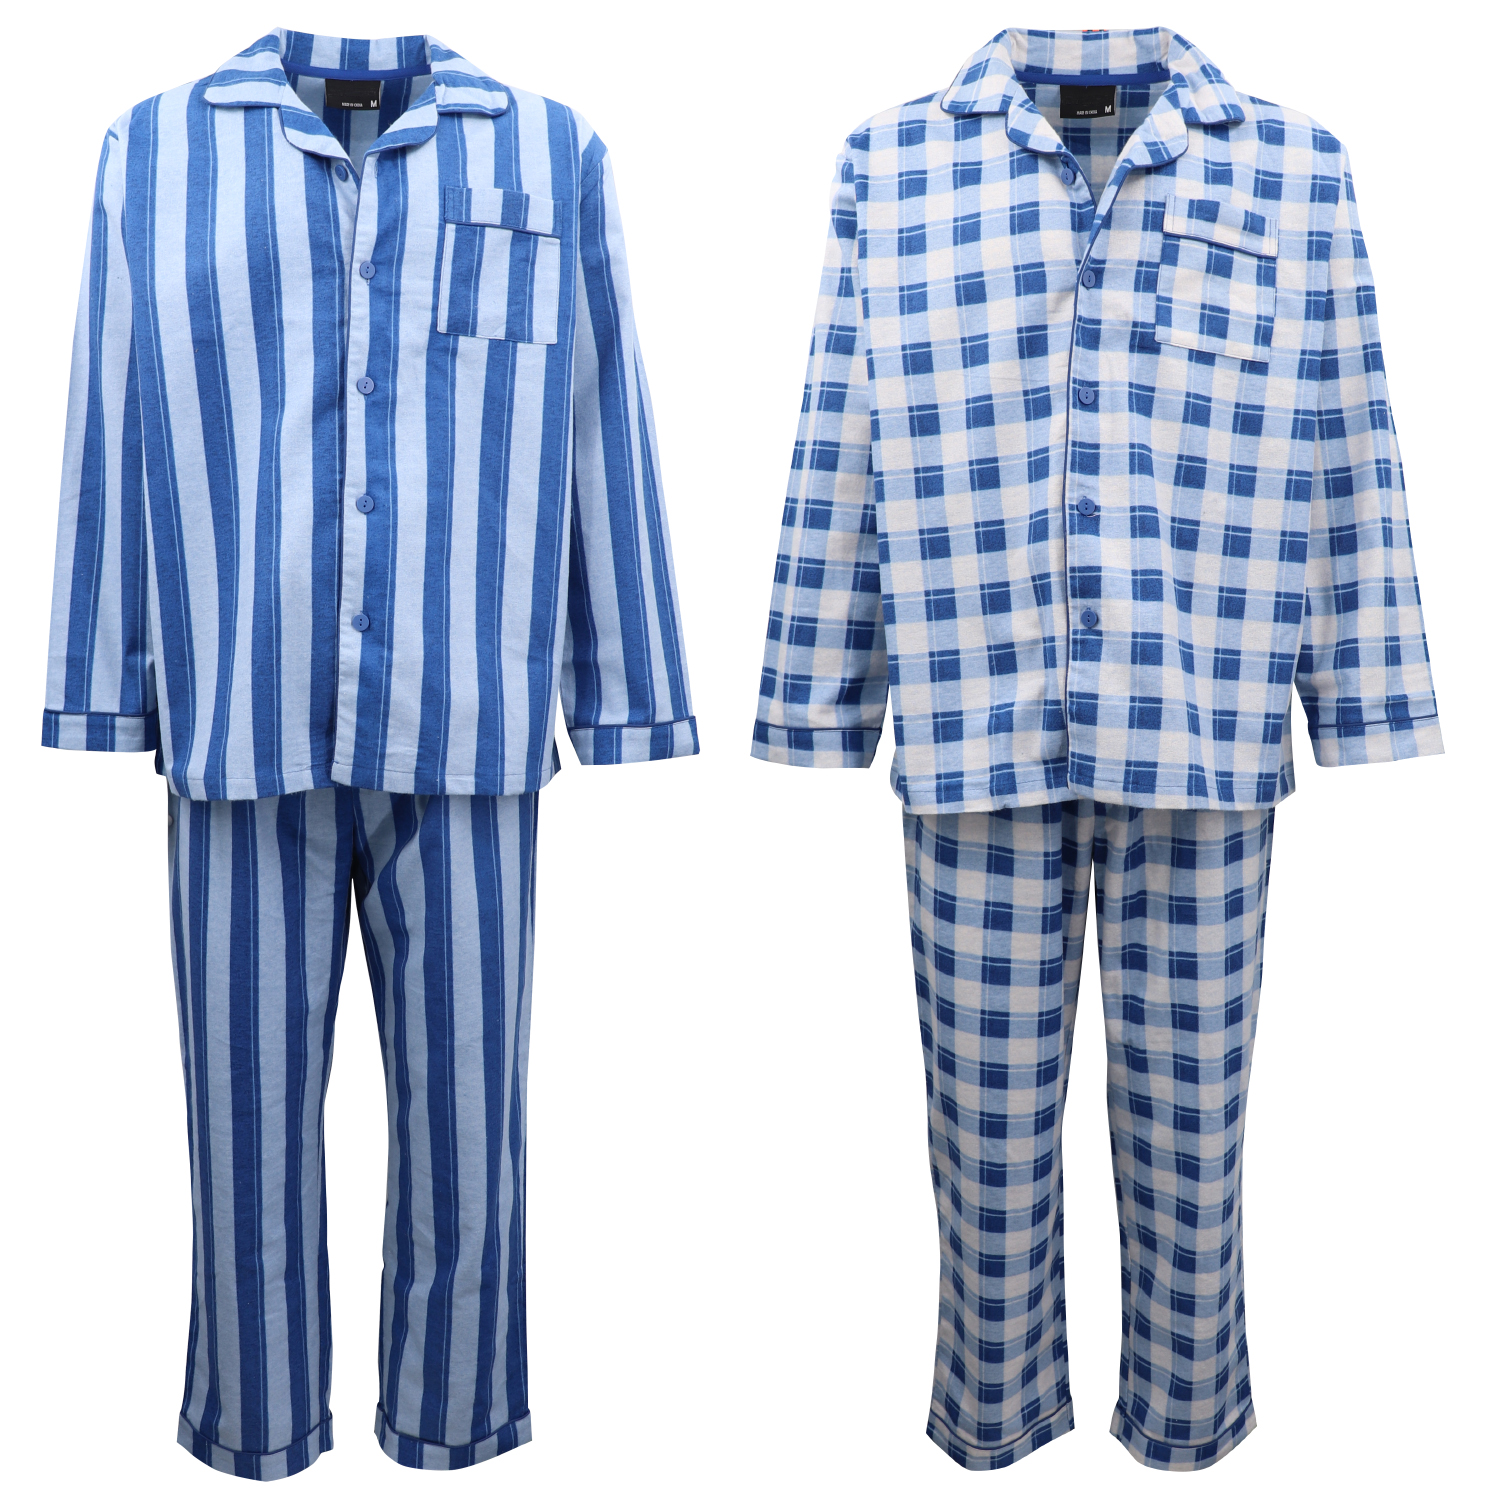 Men's 2PCS SET 100% Soft Cotton Pajamas Pyjamas PJs Sleepwear Top Pants Nightie